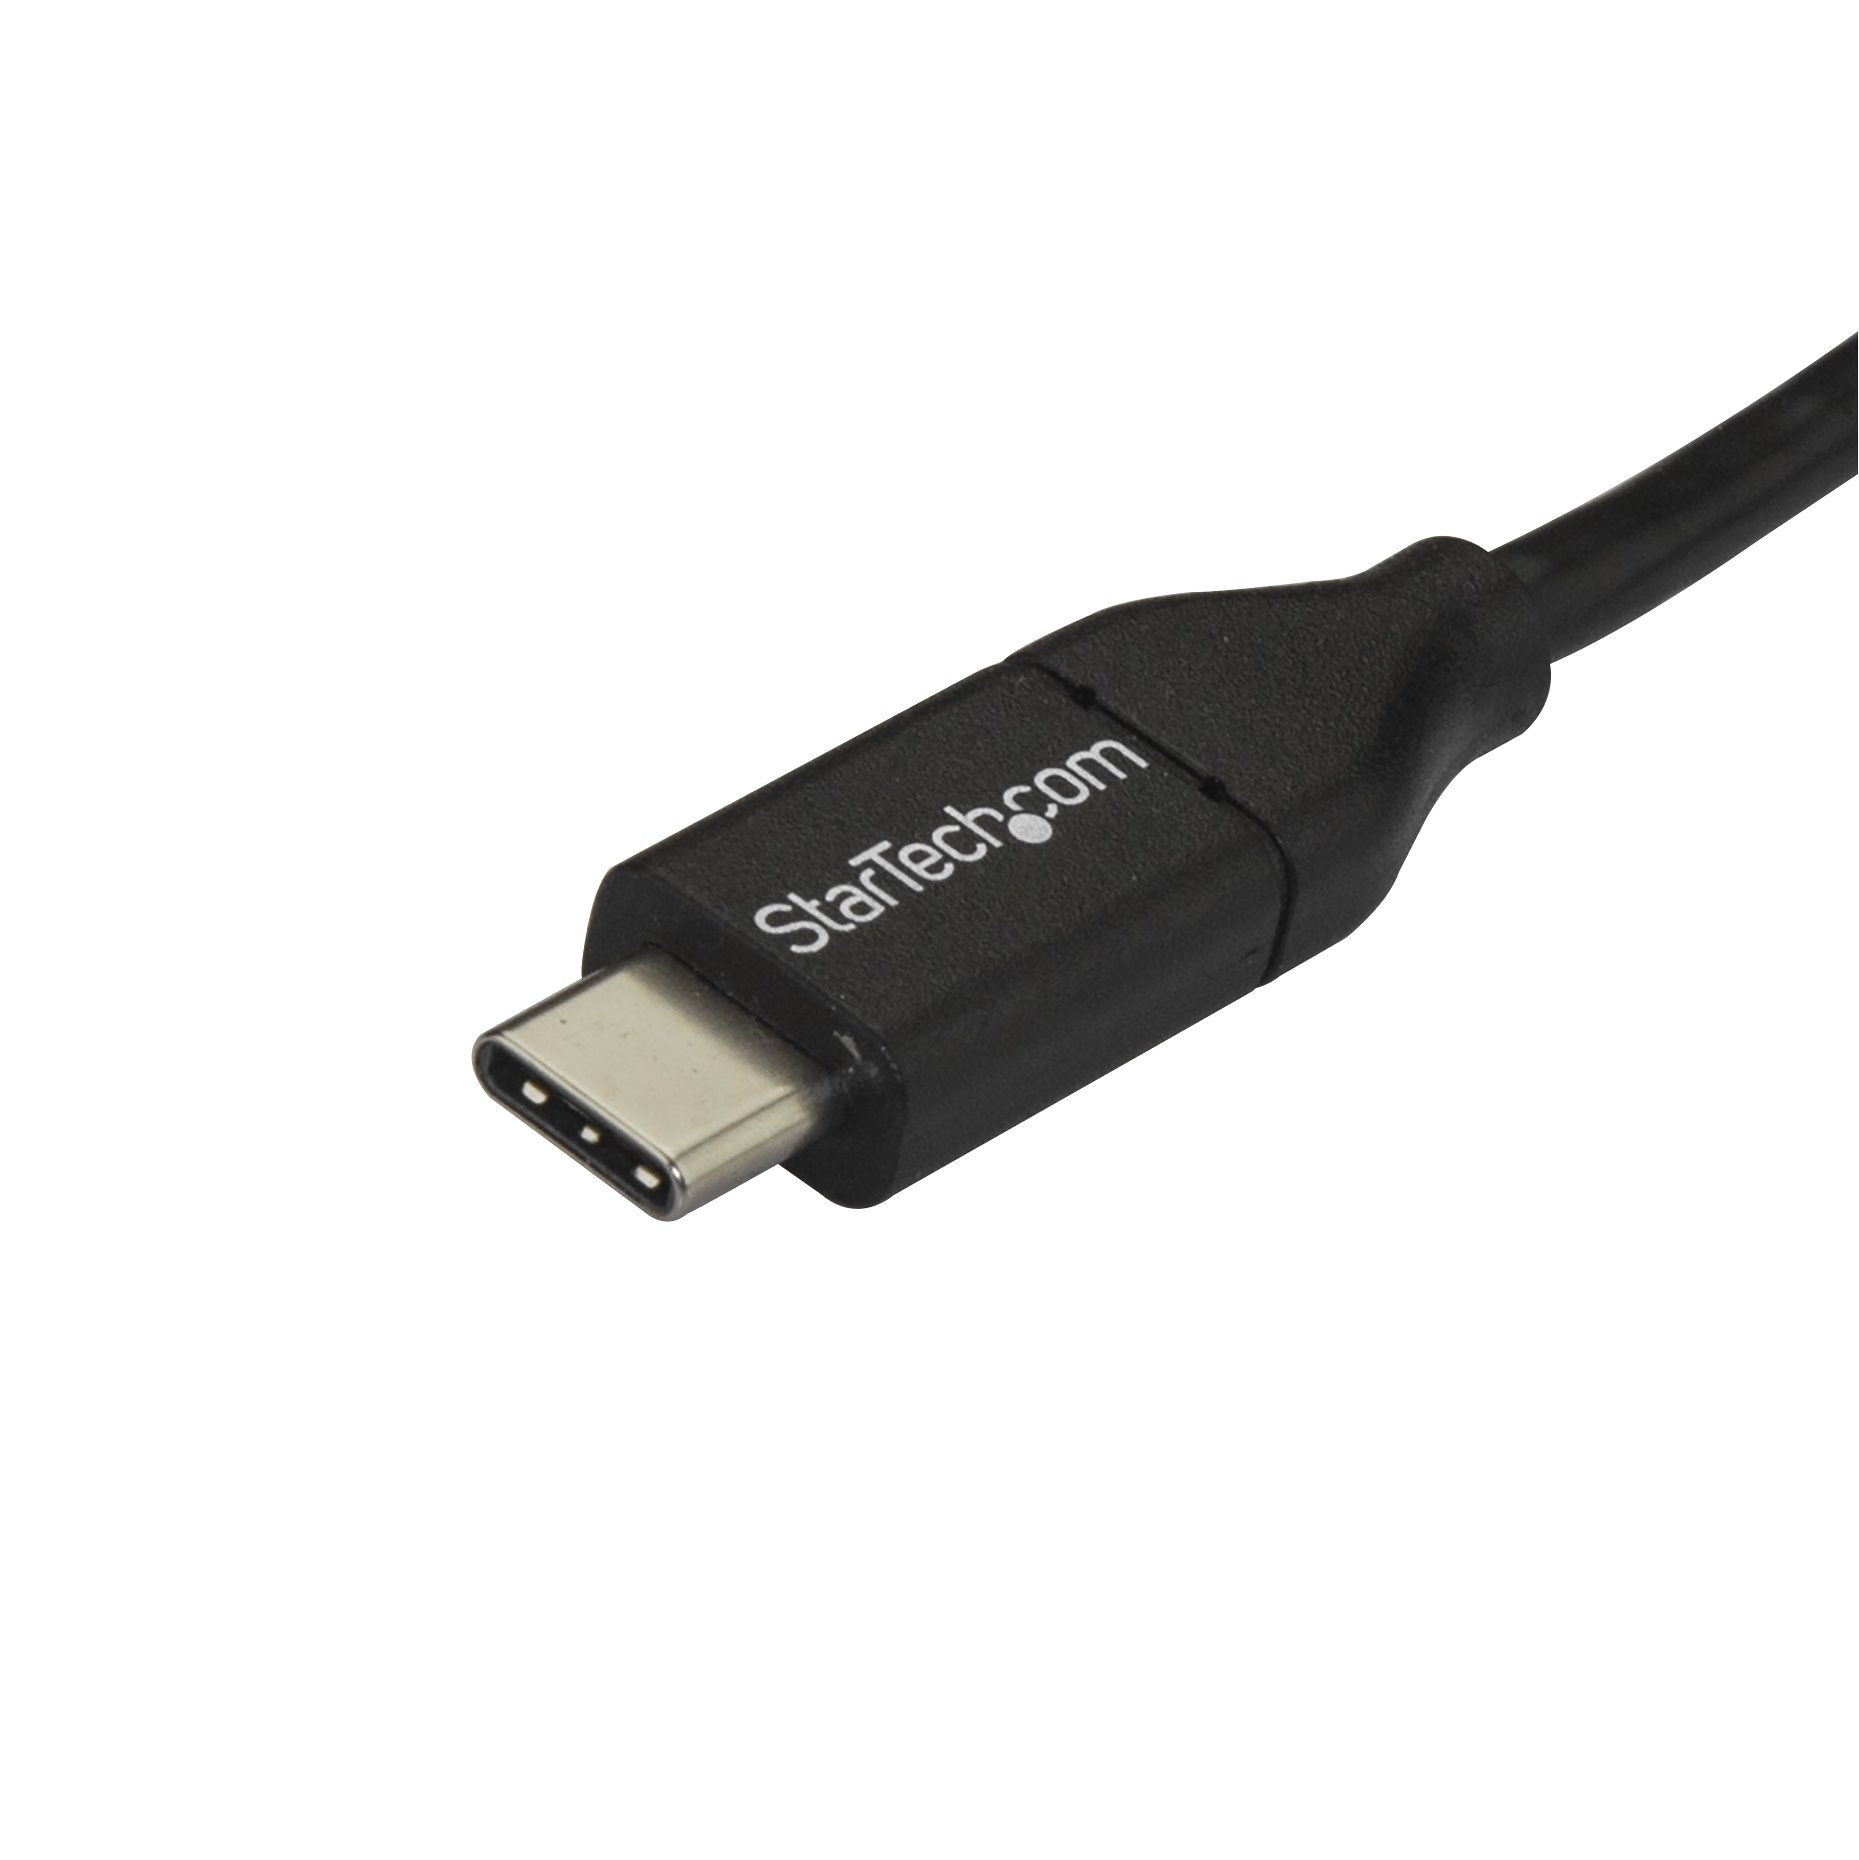 Civic De Alpen Berg kleding op 1m USB C to Micro USB Cable - USB 2.0 - USB-C Cables | StarTech.com